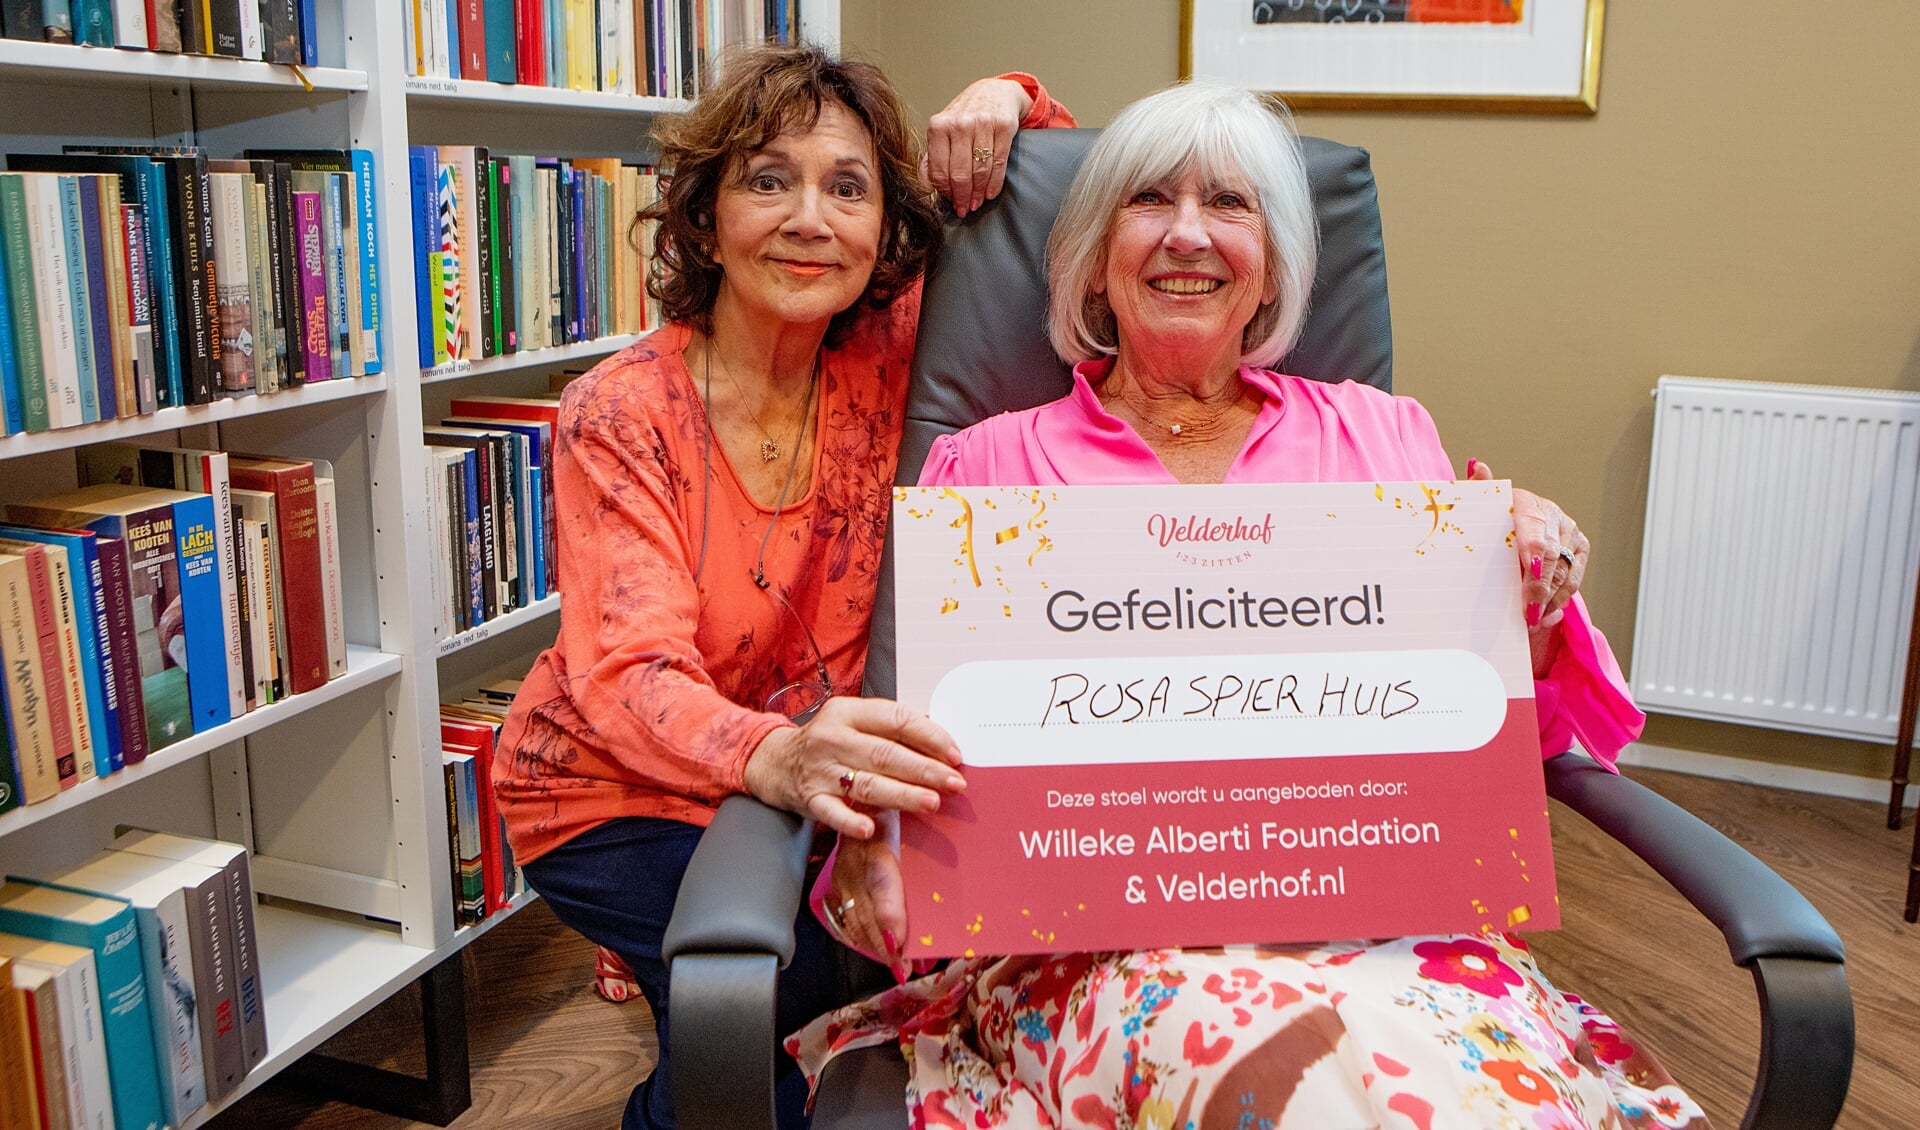 Willeke Alberti bezoekt in samenwerking met Velderhof senioren om eenzaamheid tegen te gaan en kwam een stoel brengen bij het Rosa Spierhuis.